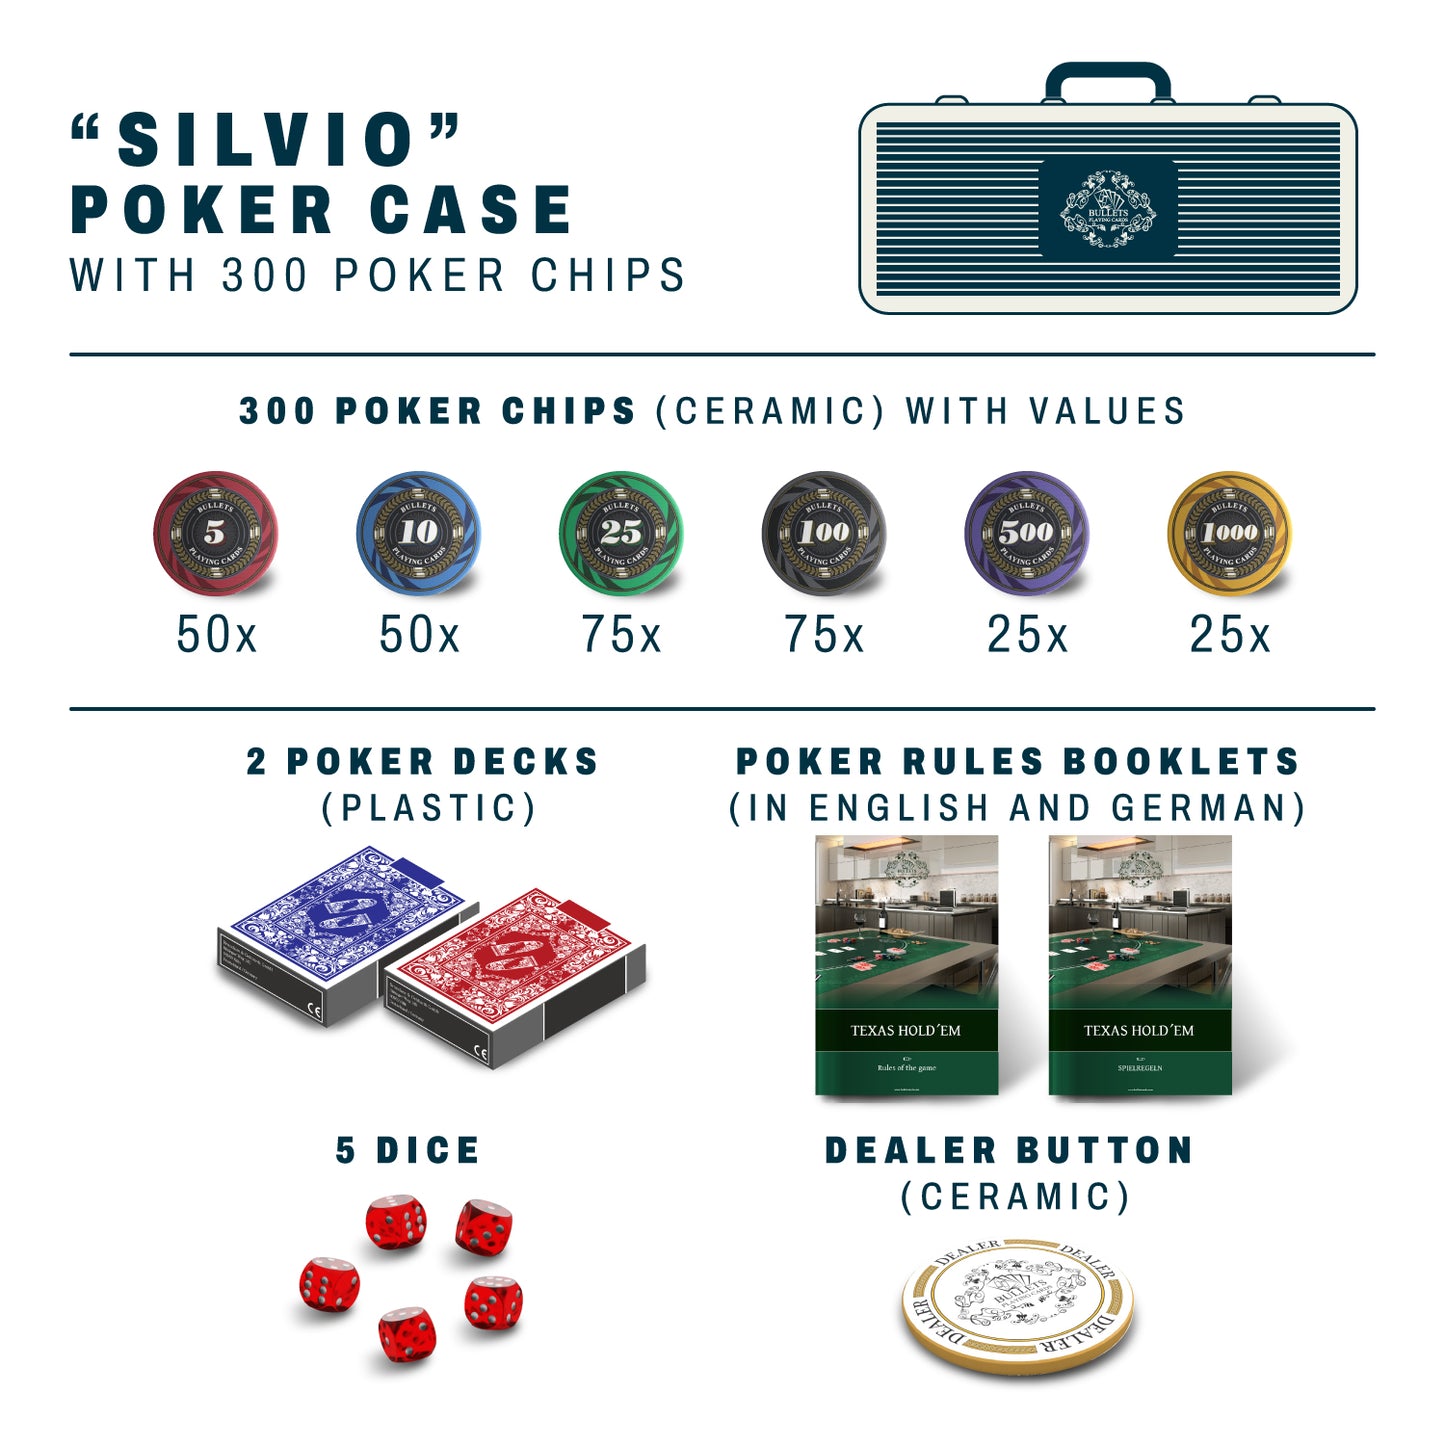 Pokerkoffer mit 300 Keramik Pokerchips "Silvio" mit Werten